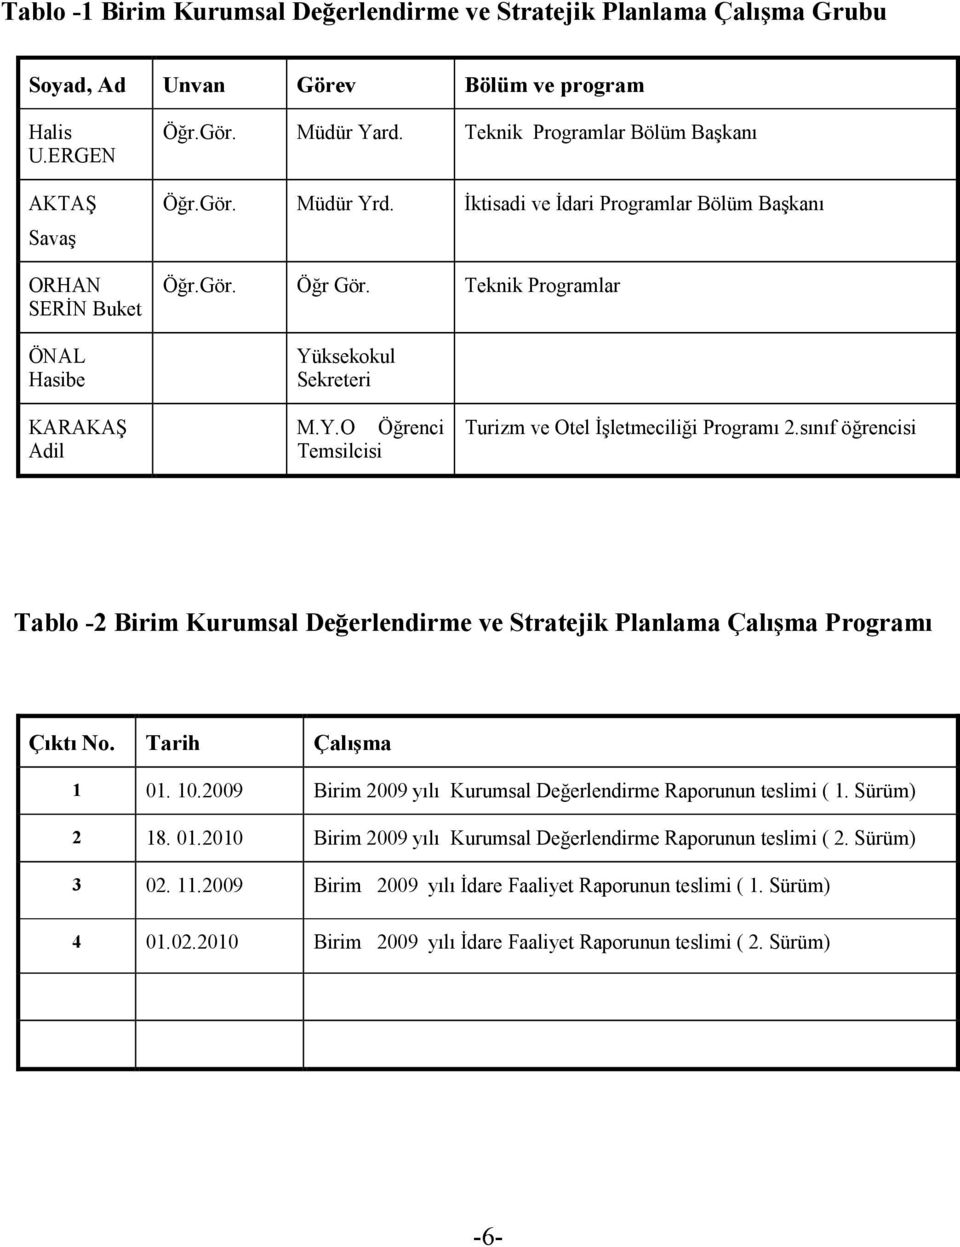 sınıf öğrencisi Tablo -2 Birim Kurumsal Değerlendirme ve Stratejik Planlama Çalışma Programı Çıktı No. Tarih Çalışma 1 01. 10.2009 Birim 2009 yılı Kurumsal Değerlendirme Raporunun teslimi ( 1.